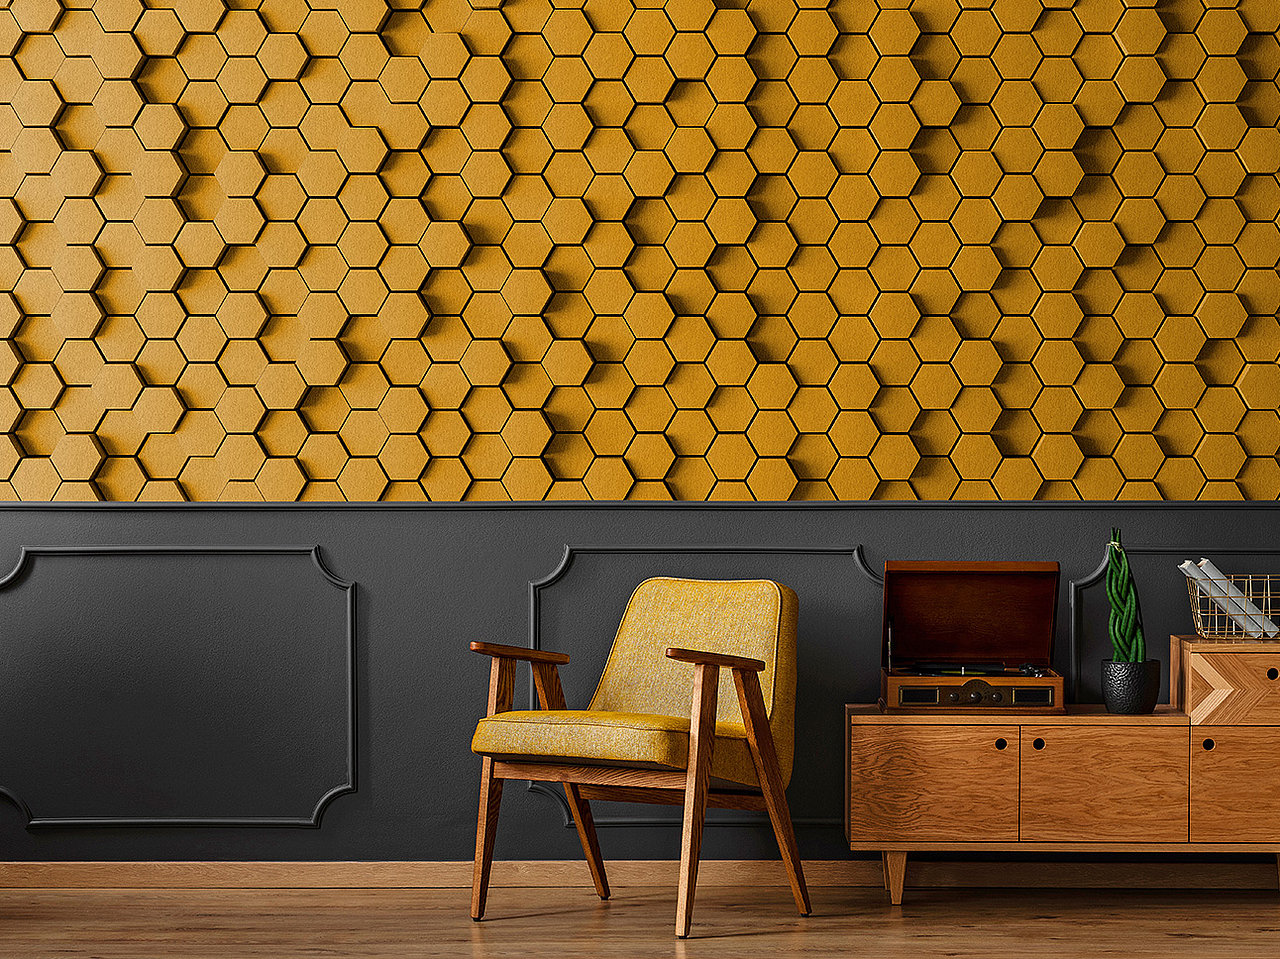 Honeycomb 1 - Papier peint 3D nid d'abeille jaune